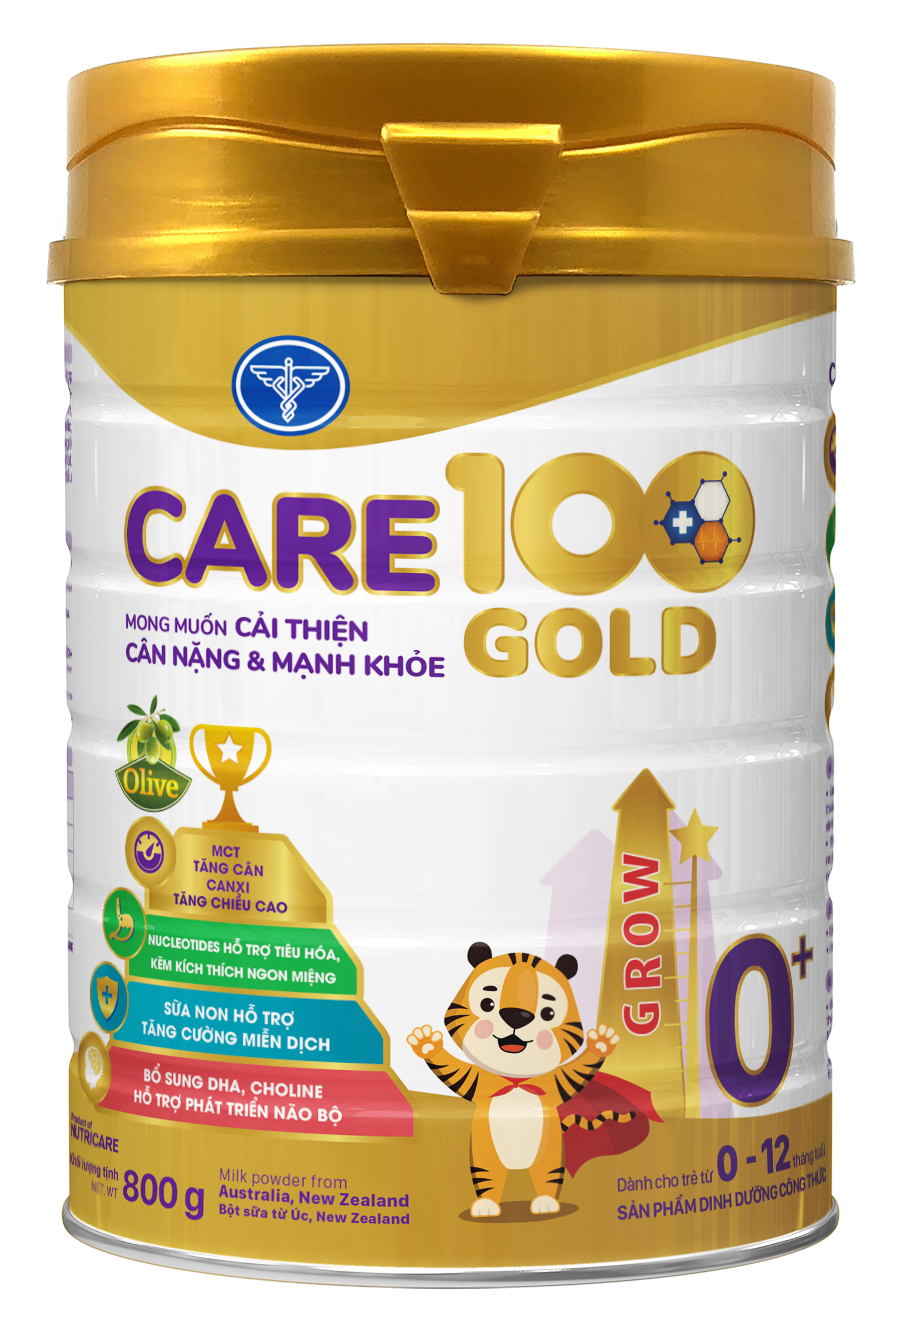 Sữa công thức Care 100 Gold 0+ lon 800g - Dành cho bé 0-12 tháng tuổi, Mong muốn cải thiện Cân nặng &amp; Mạnh khoẻ